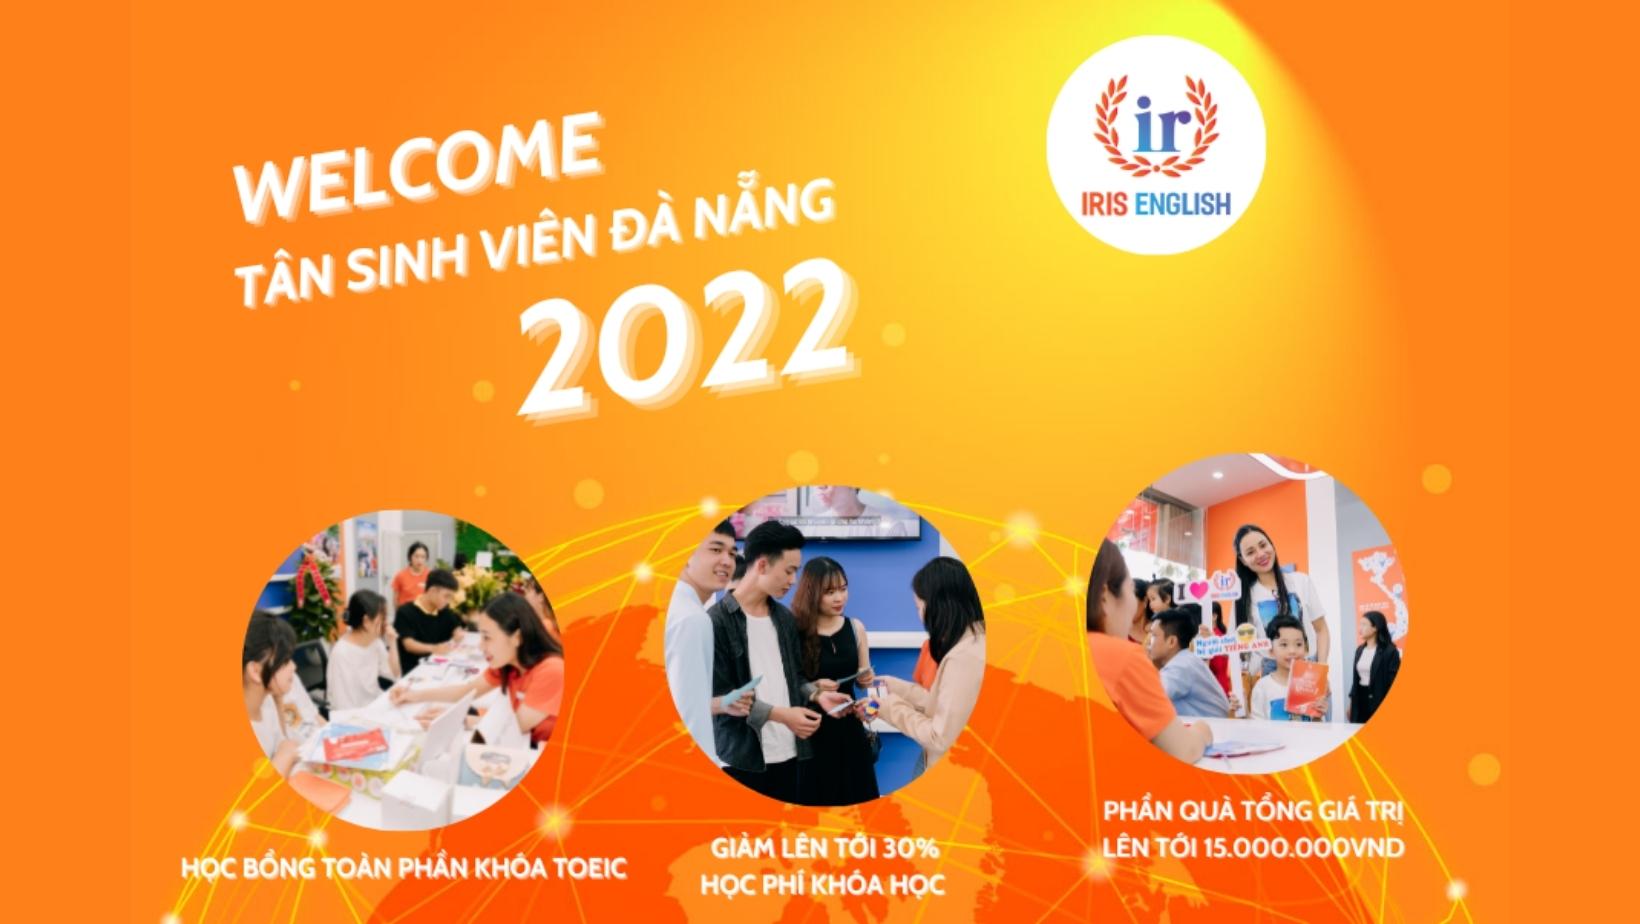 Iris Welcome Tân Sinh Viên Đà Nẵng 2022